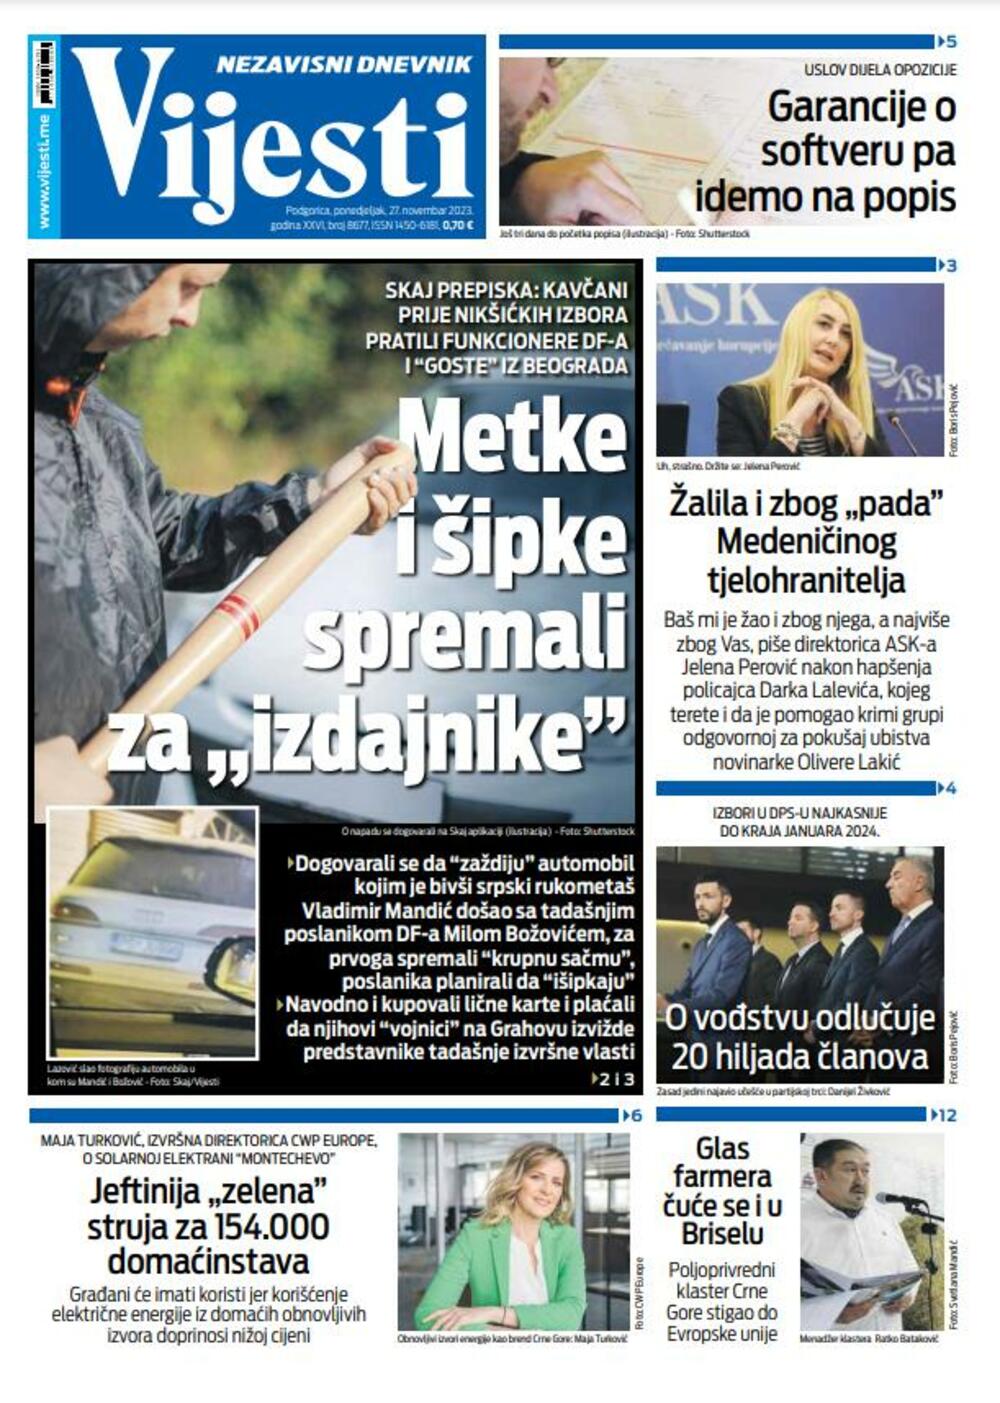 Naslovna strana "Vijesti" za 27. novembar 2023., Foto: Vijesti